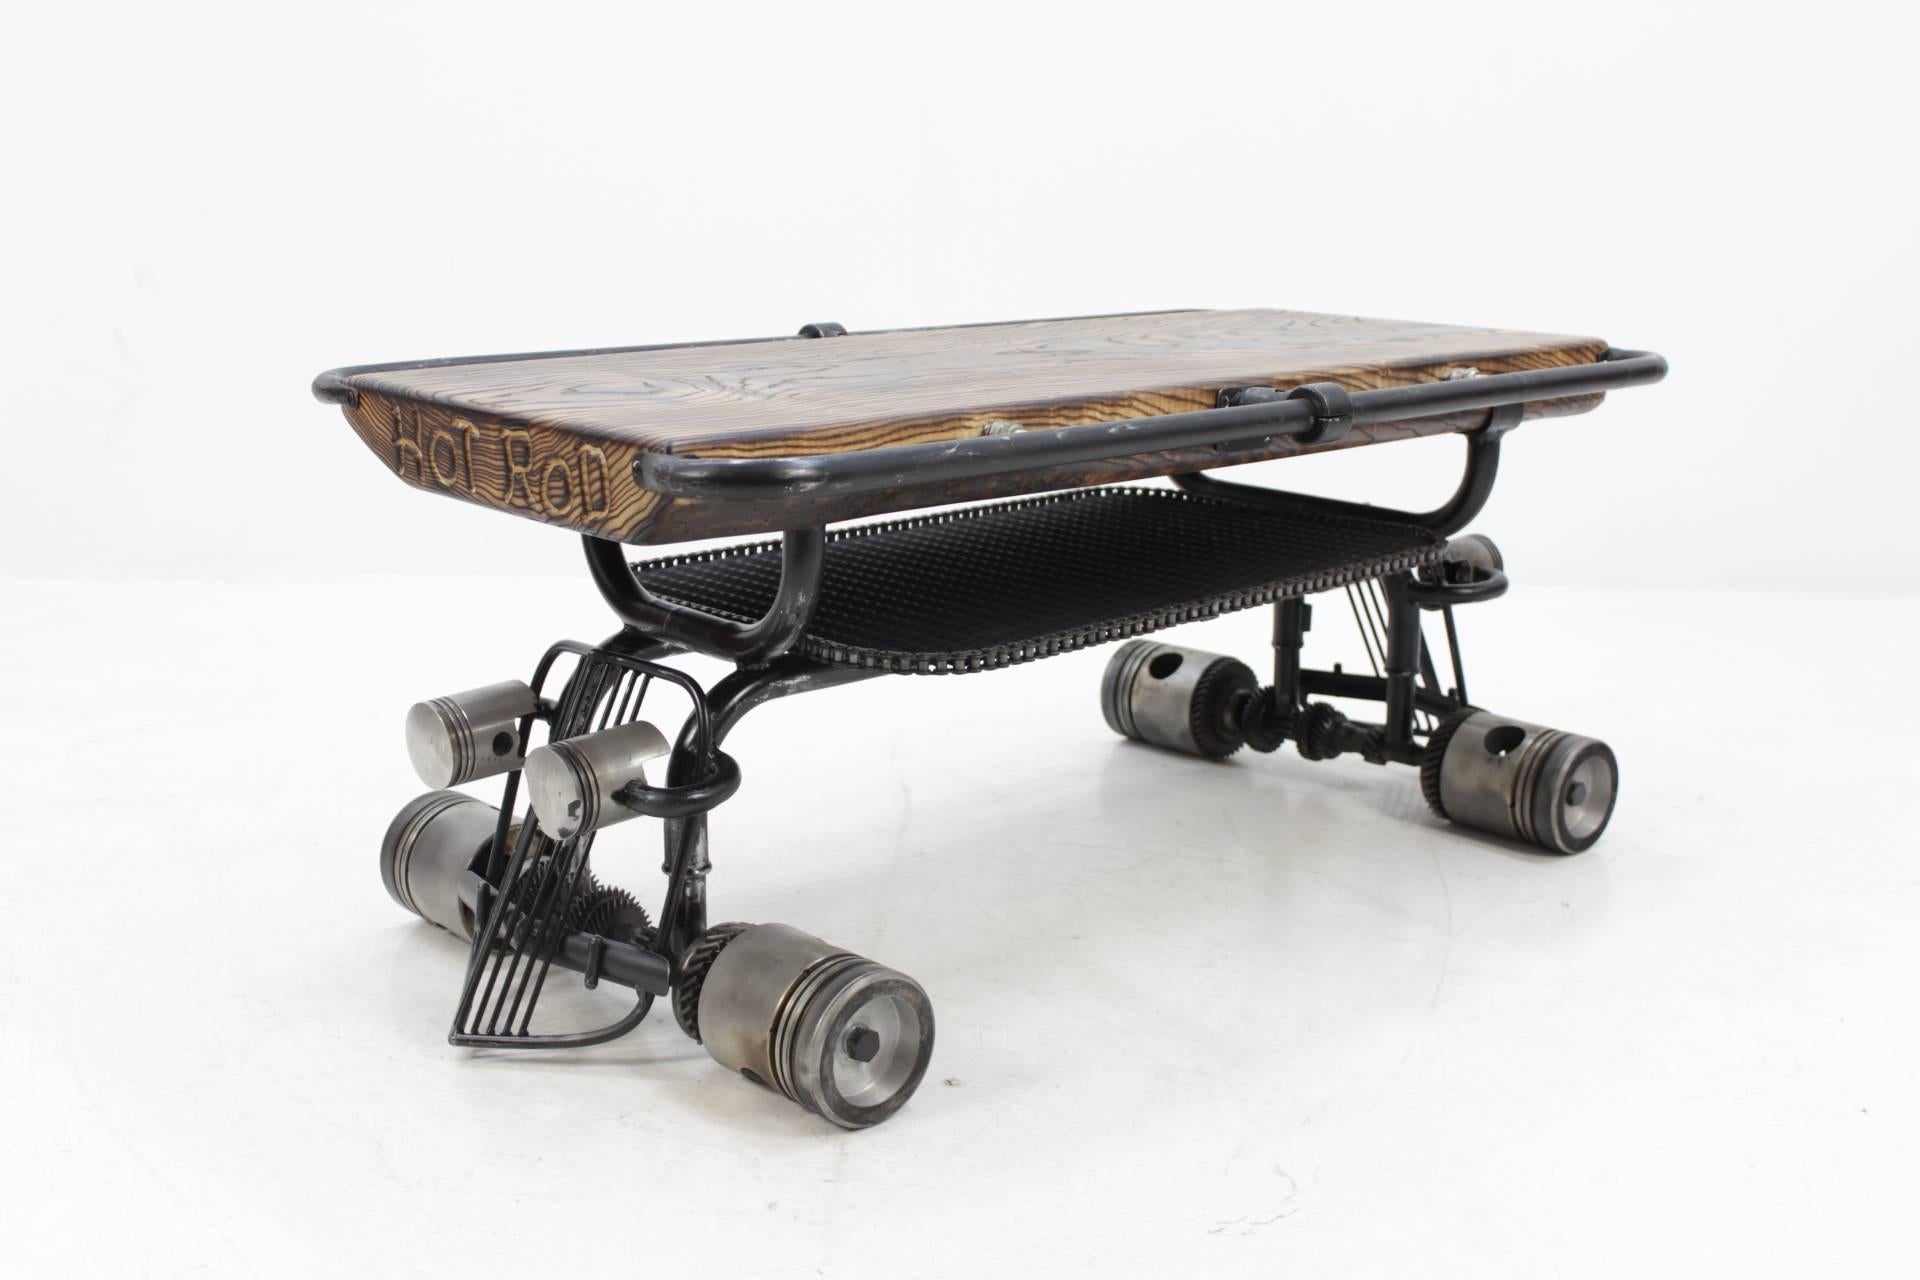 Cette table basse faite à la main a été fabriquée à partir de pièces recyclées de moteurs et d'autres matériaux. Le bureau supérieur est en bois de frêne massif.
Chaque pièce est unique et il n'y a pas de production en série.
Il existe une